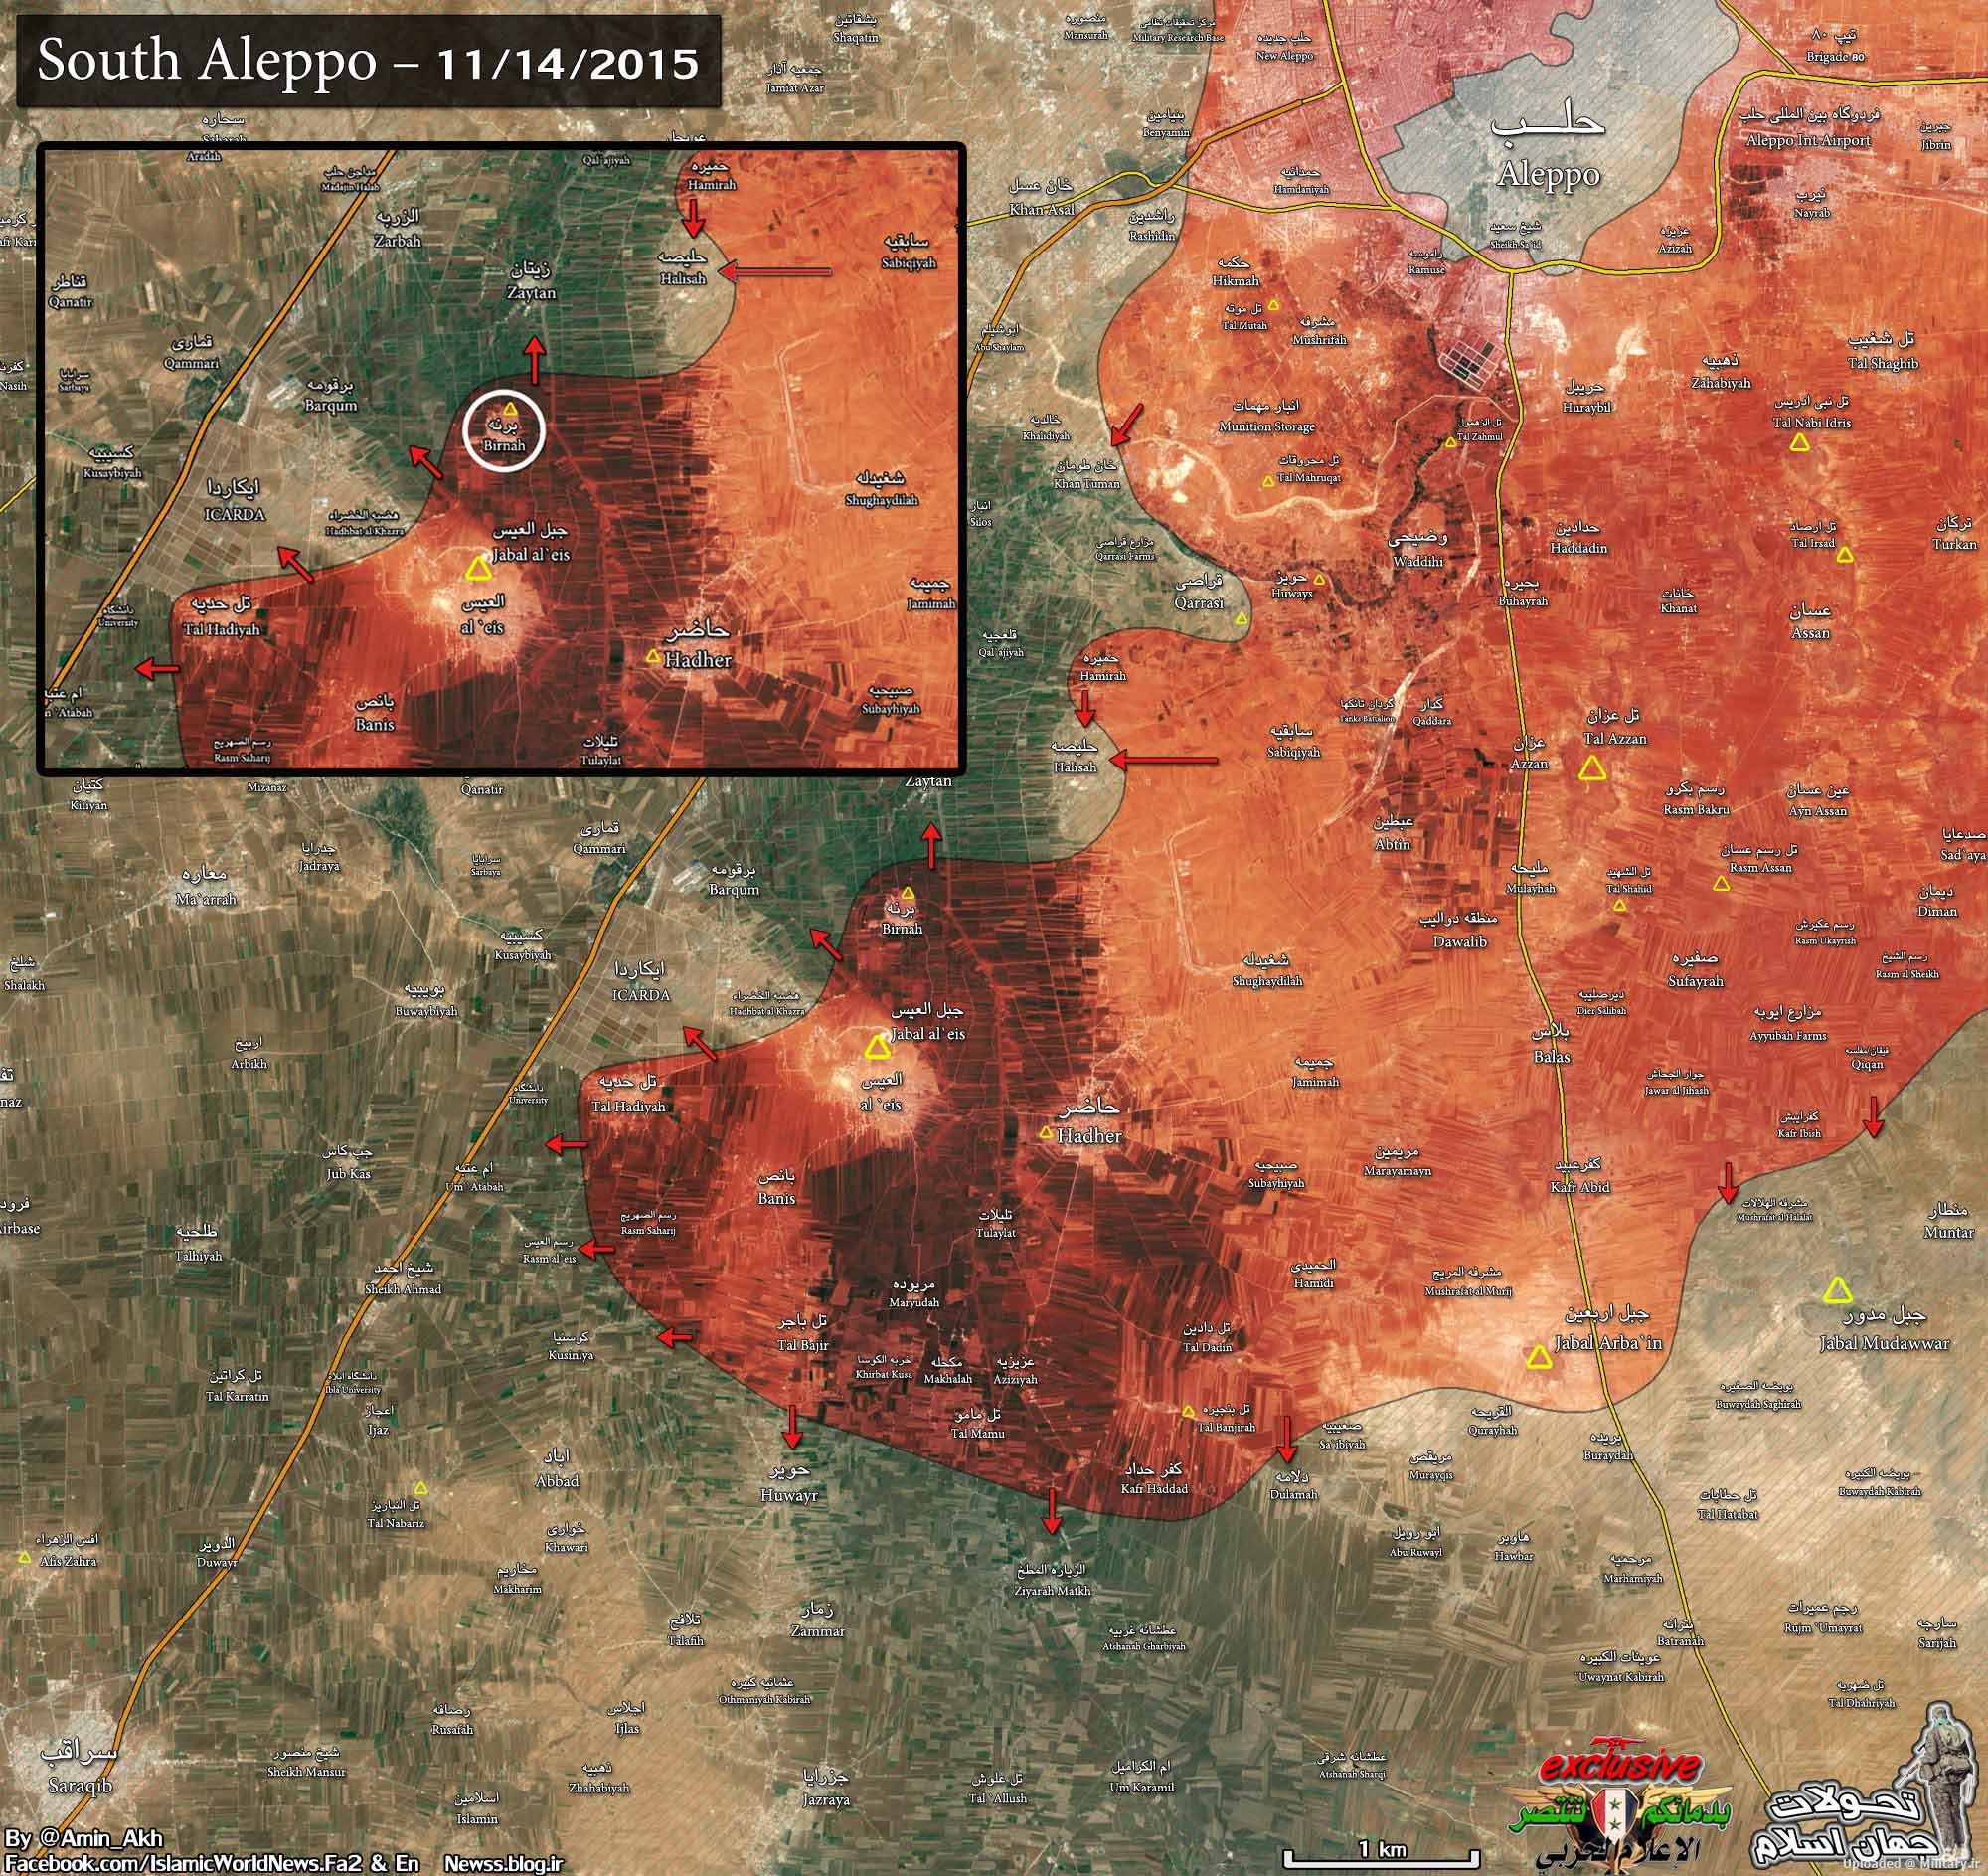 South_Aleppo_1km_cut1_14nov_23aban.JPG